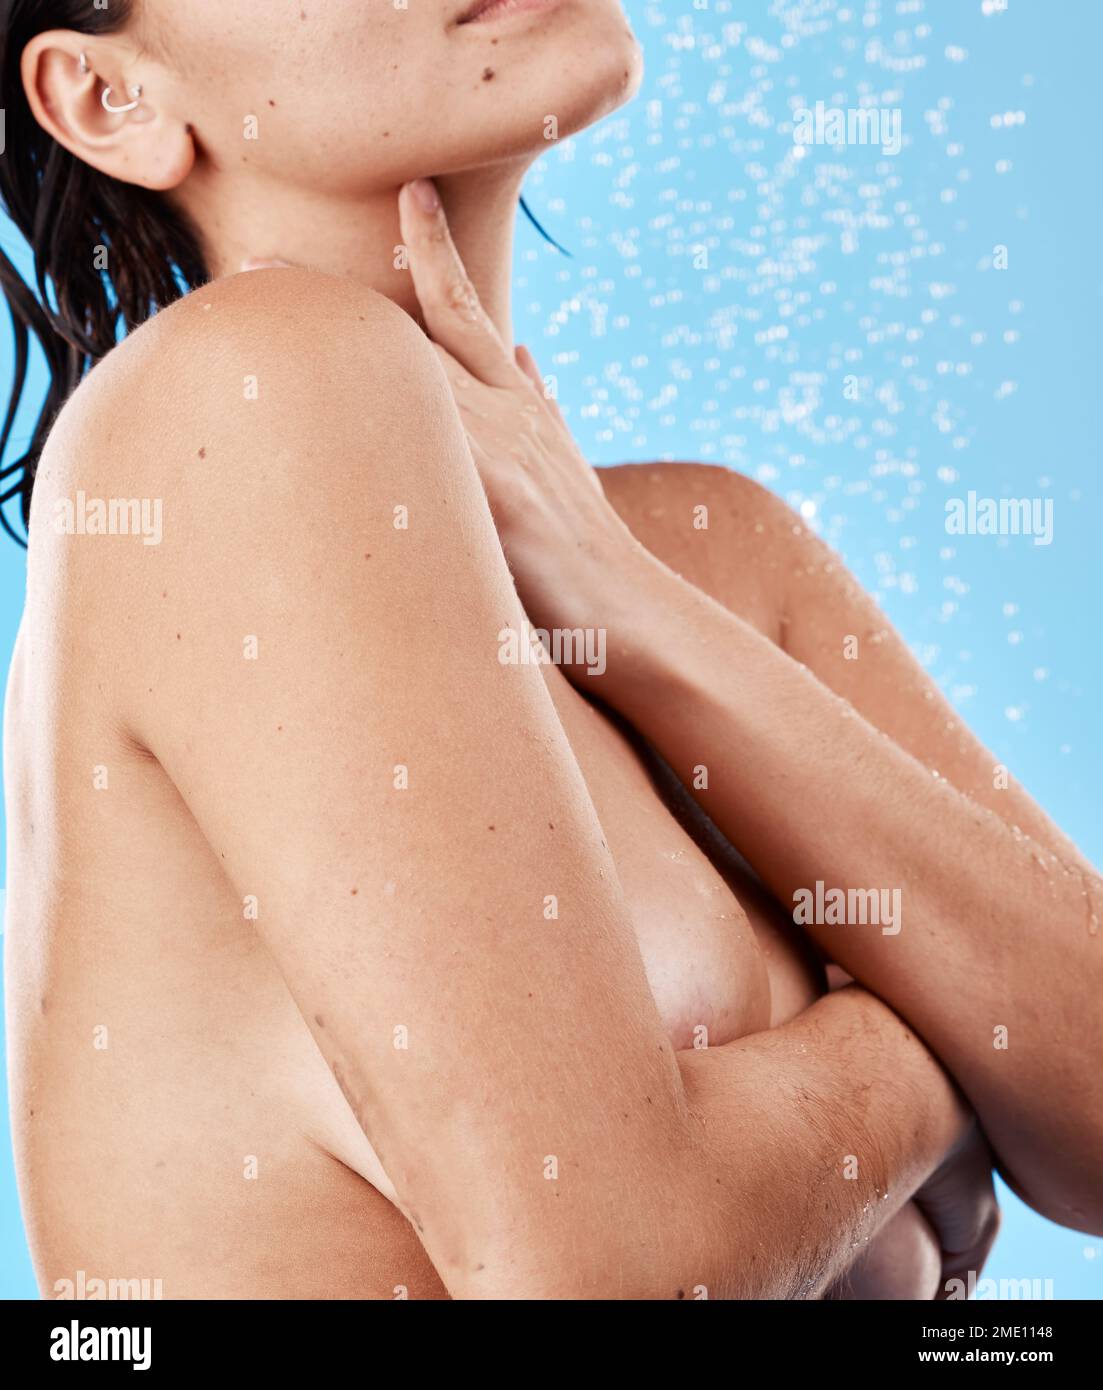 Schönheits-, Körper- und Wellness-Frau in der Dusche für Reinigung, Hautpflege und Hygiene Wellness-Waschen. Relax, Gesundheit und Selbstpflege Lebensstil von Calm Girl Model Stockfoto